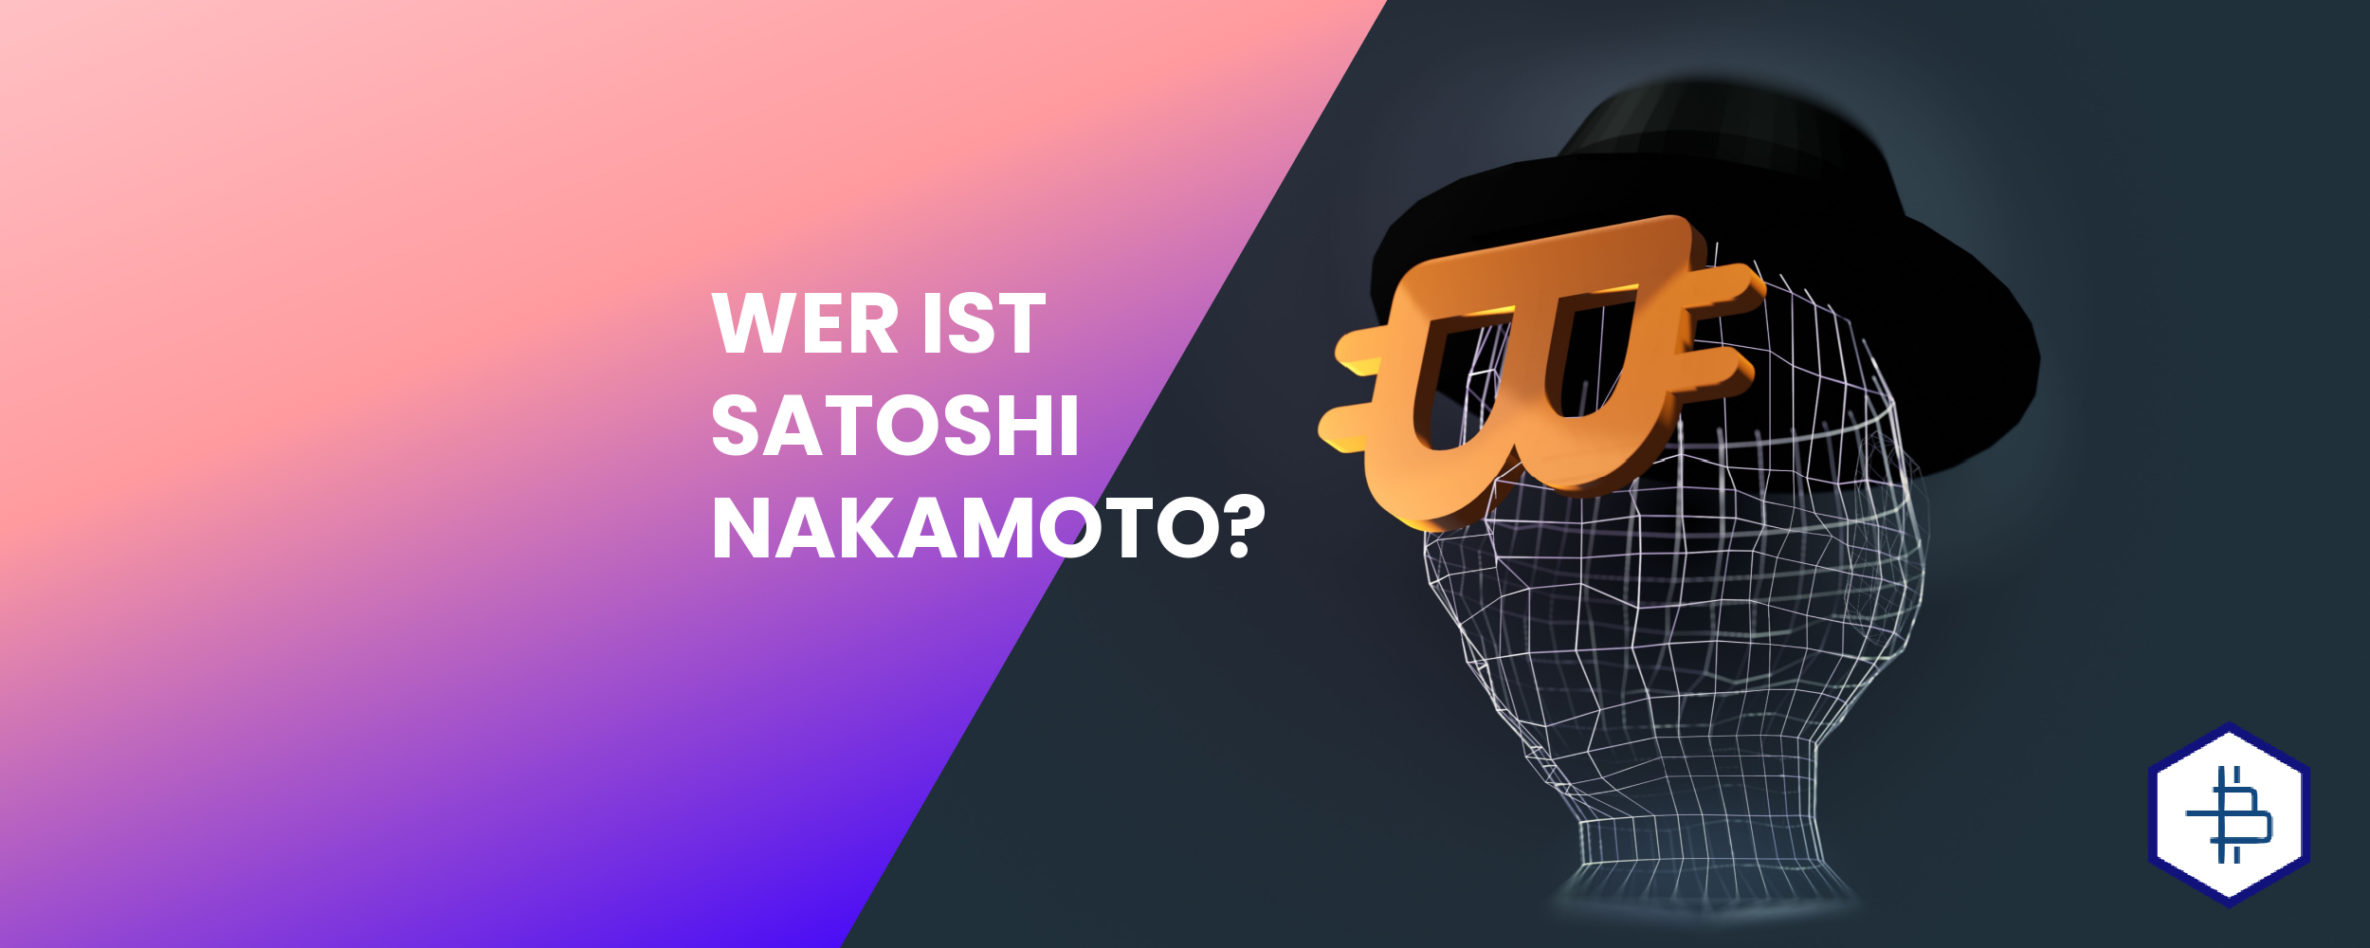 Wer ist Satoshi Nakamoto